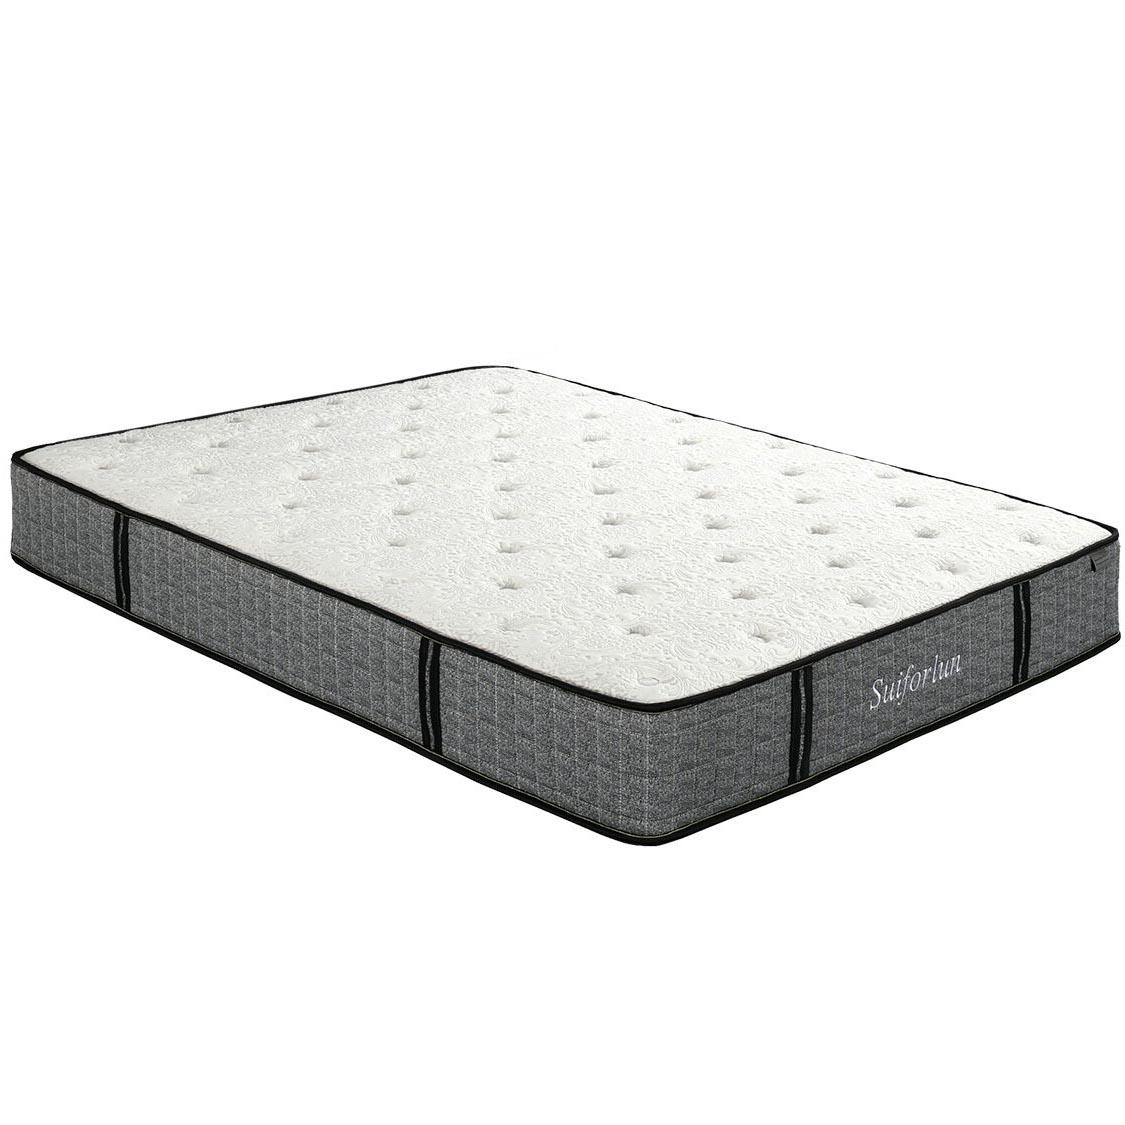 Suiforlun mattress comfortable queen hybrid mattress customized for family-2